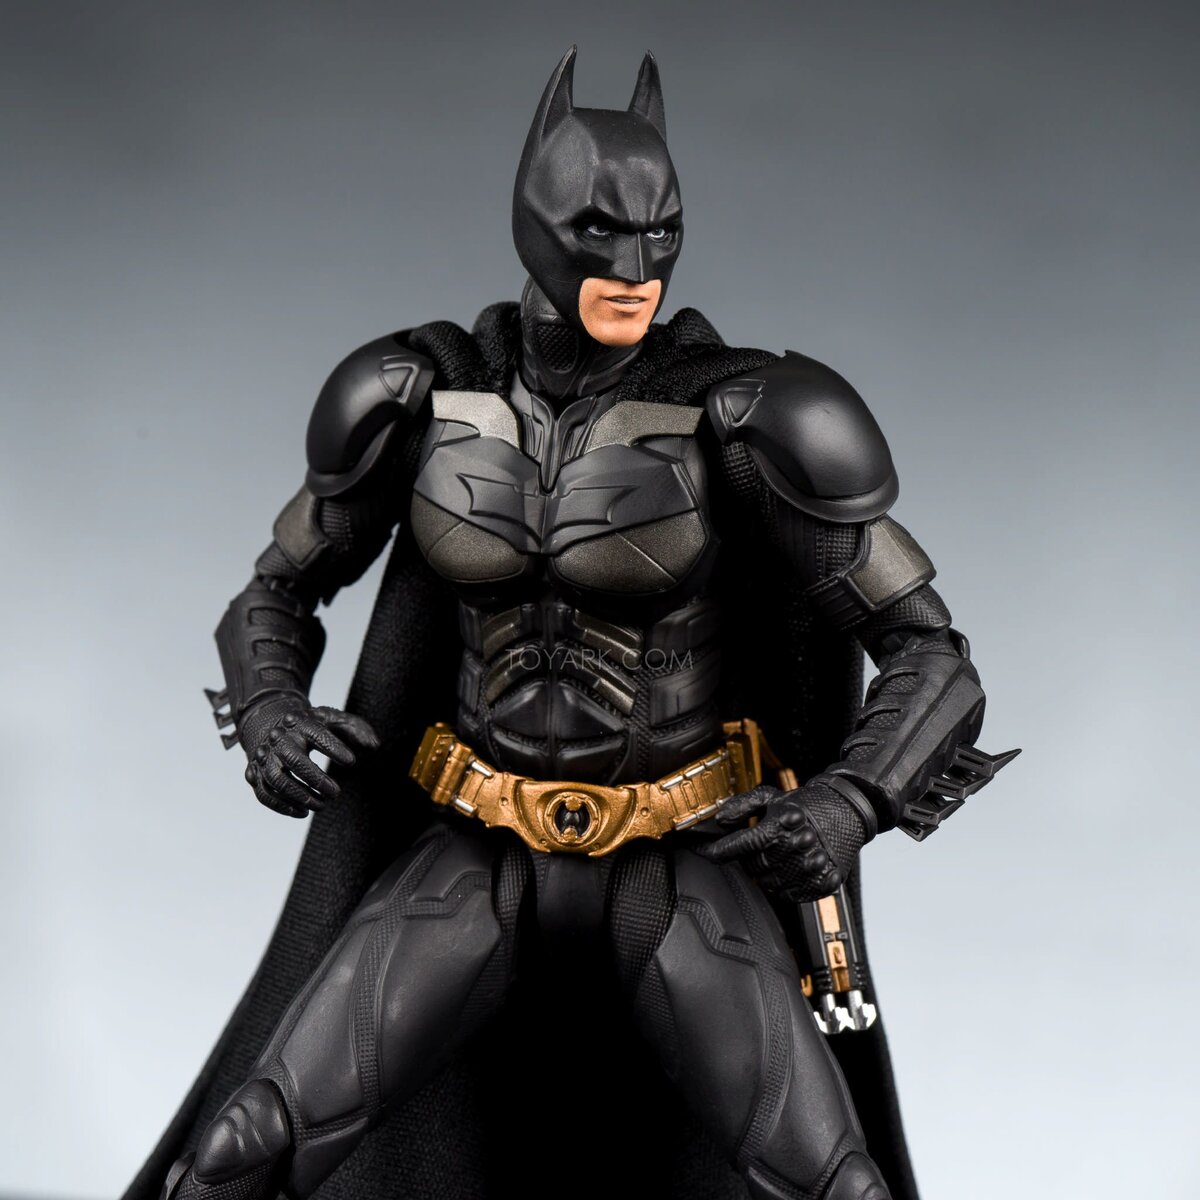 Приветствую друзья! Всем известен такой герой комиксов, как Бэтмен. Человек-летучая мышь - мрачный крепыш. Человек без суперспособностей, но с толстым кошельком и накаченным торсом.-2-2